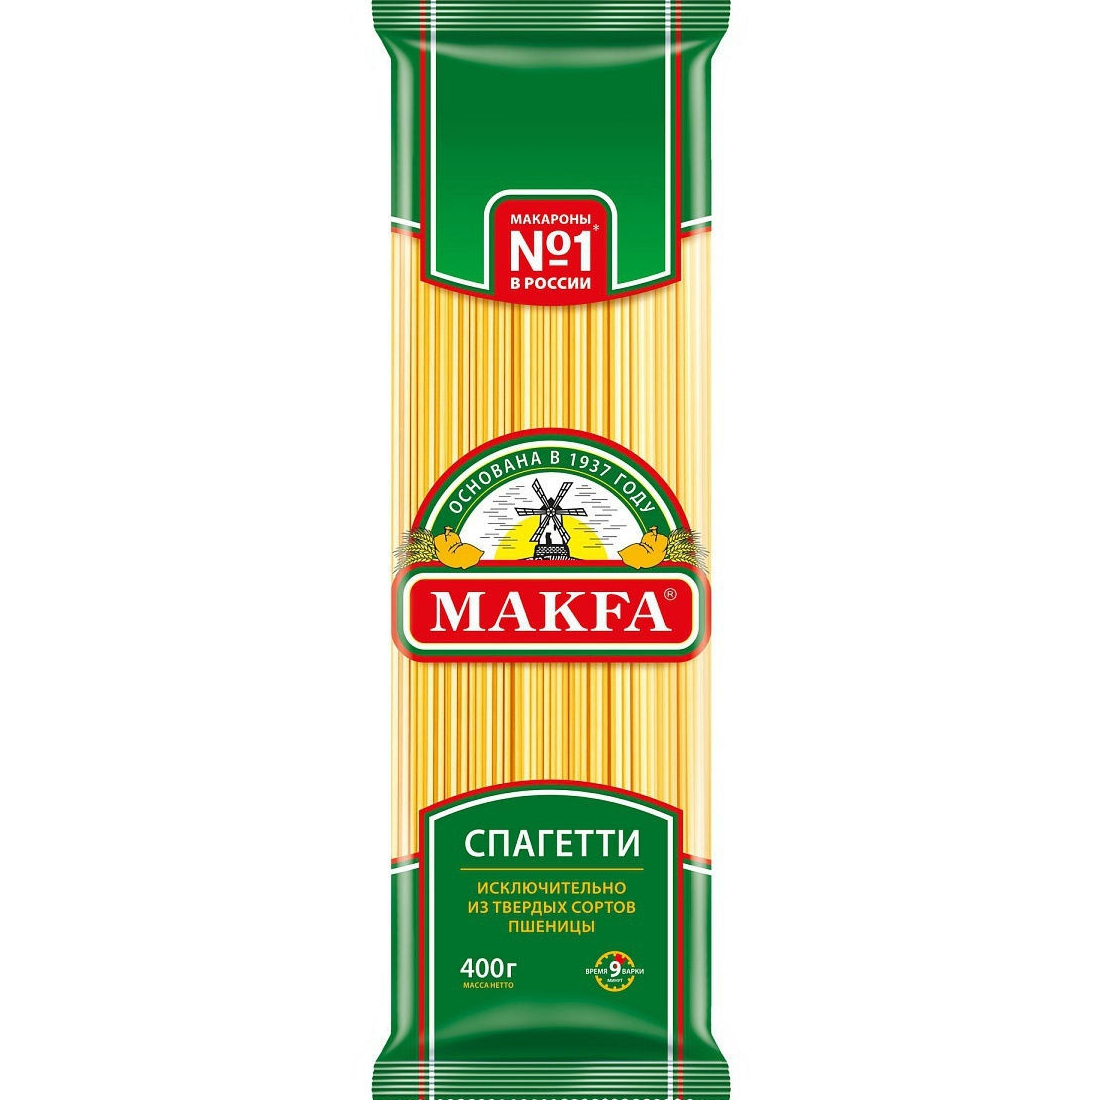 Макароны Makfa Спагетти 400 г макароны барилла спагетти без глютена 400 г